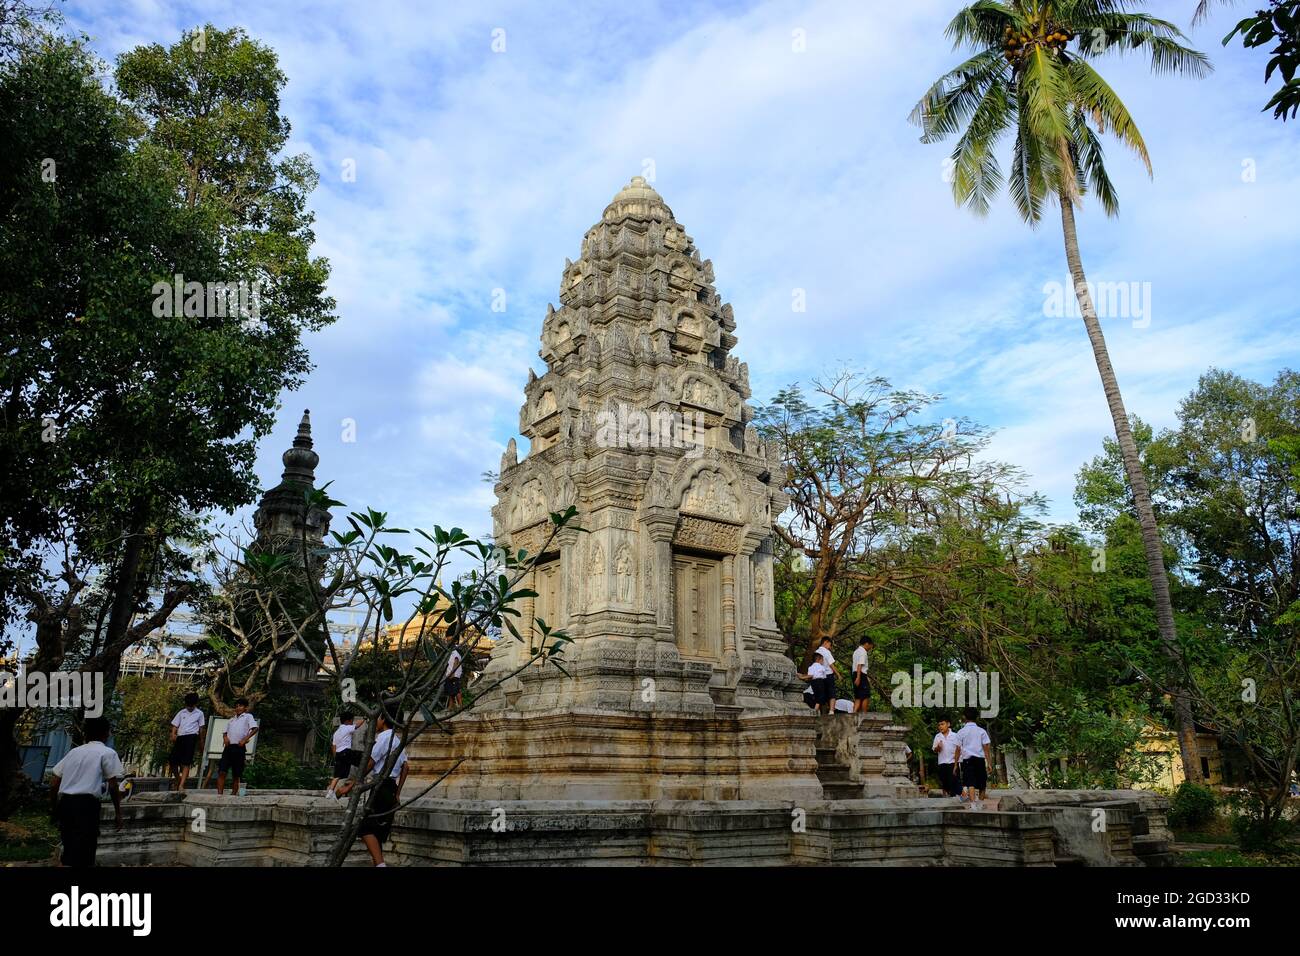 Cambodge Krong Siem Reap - Tour Wat Damnak Prang dans le jardin Banque D'Images